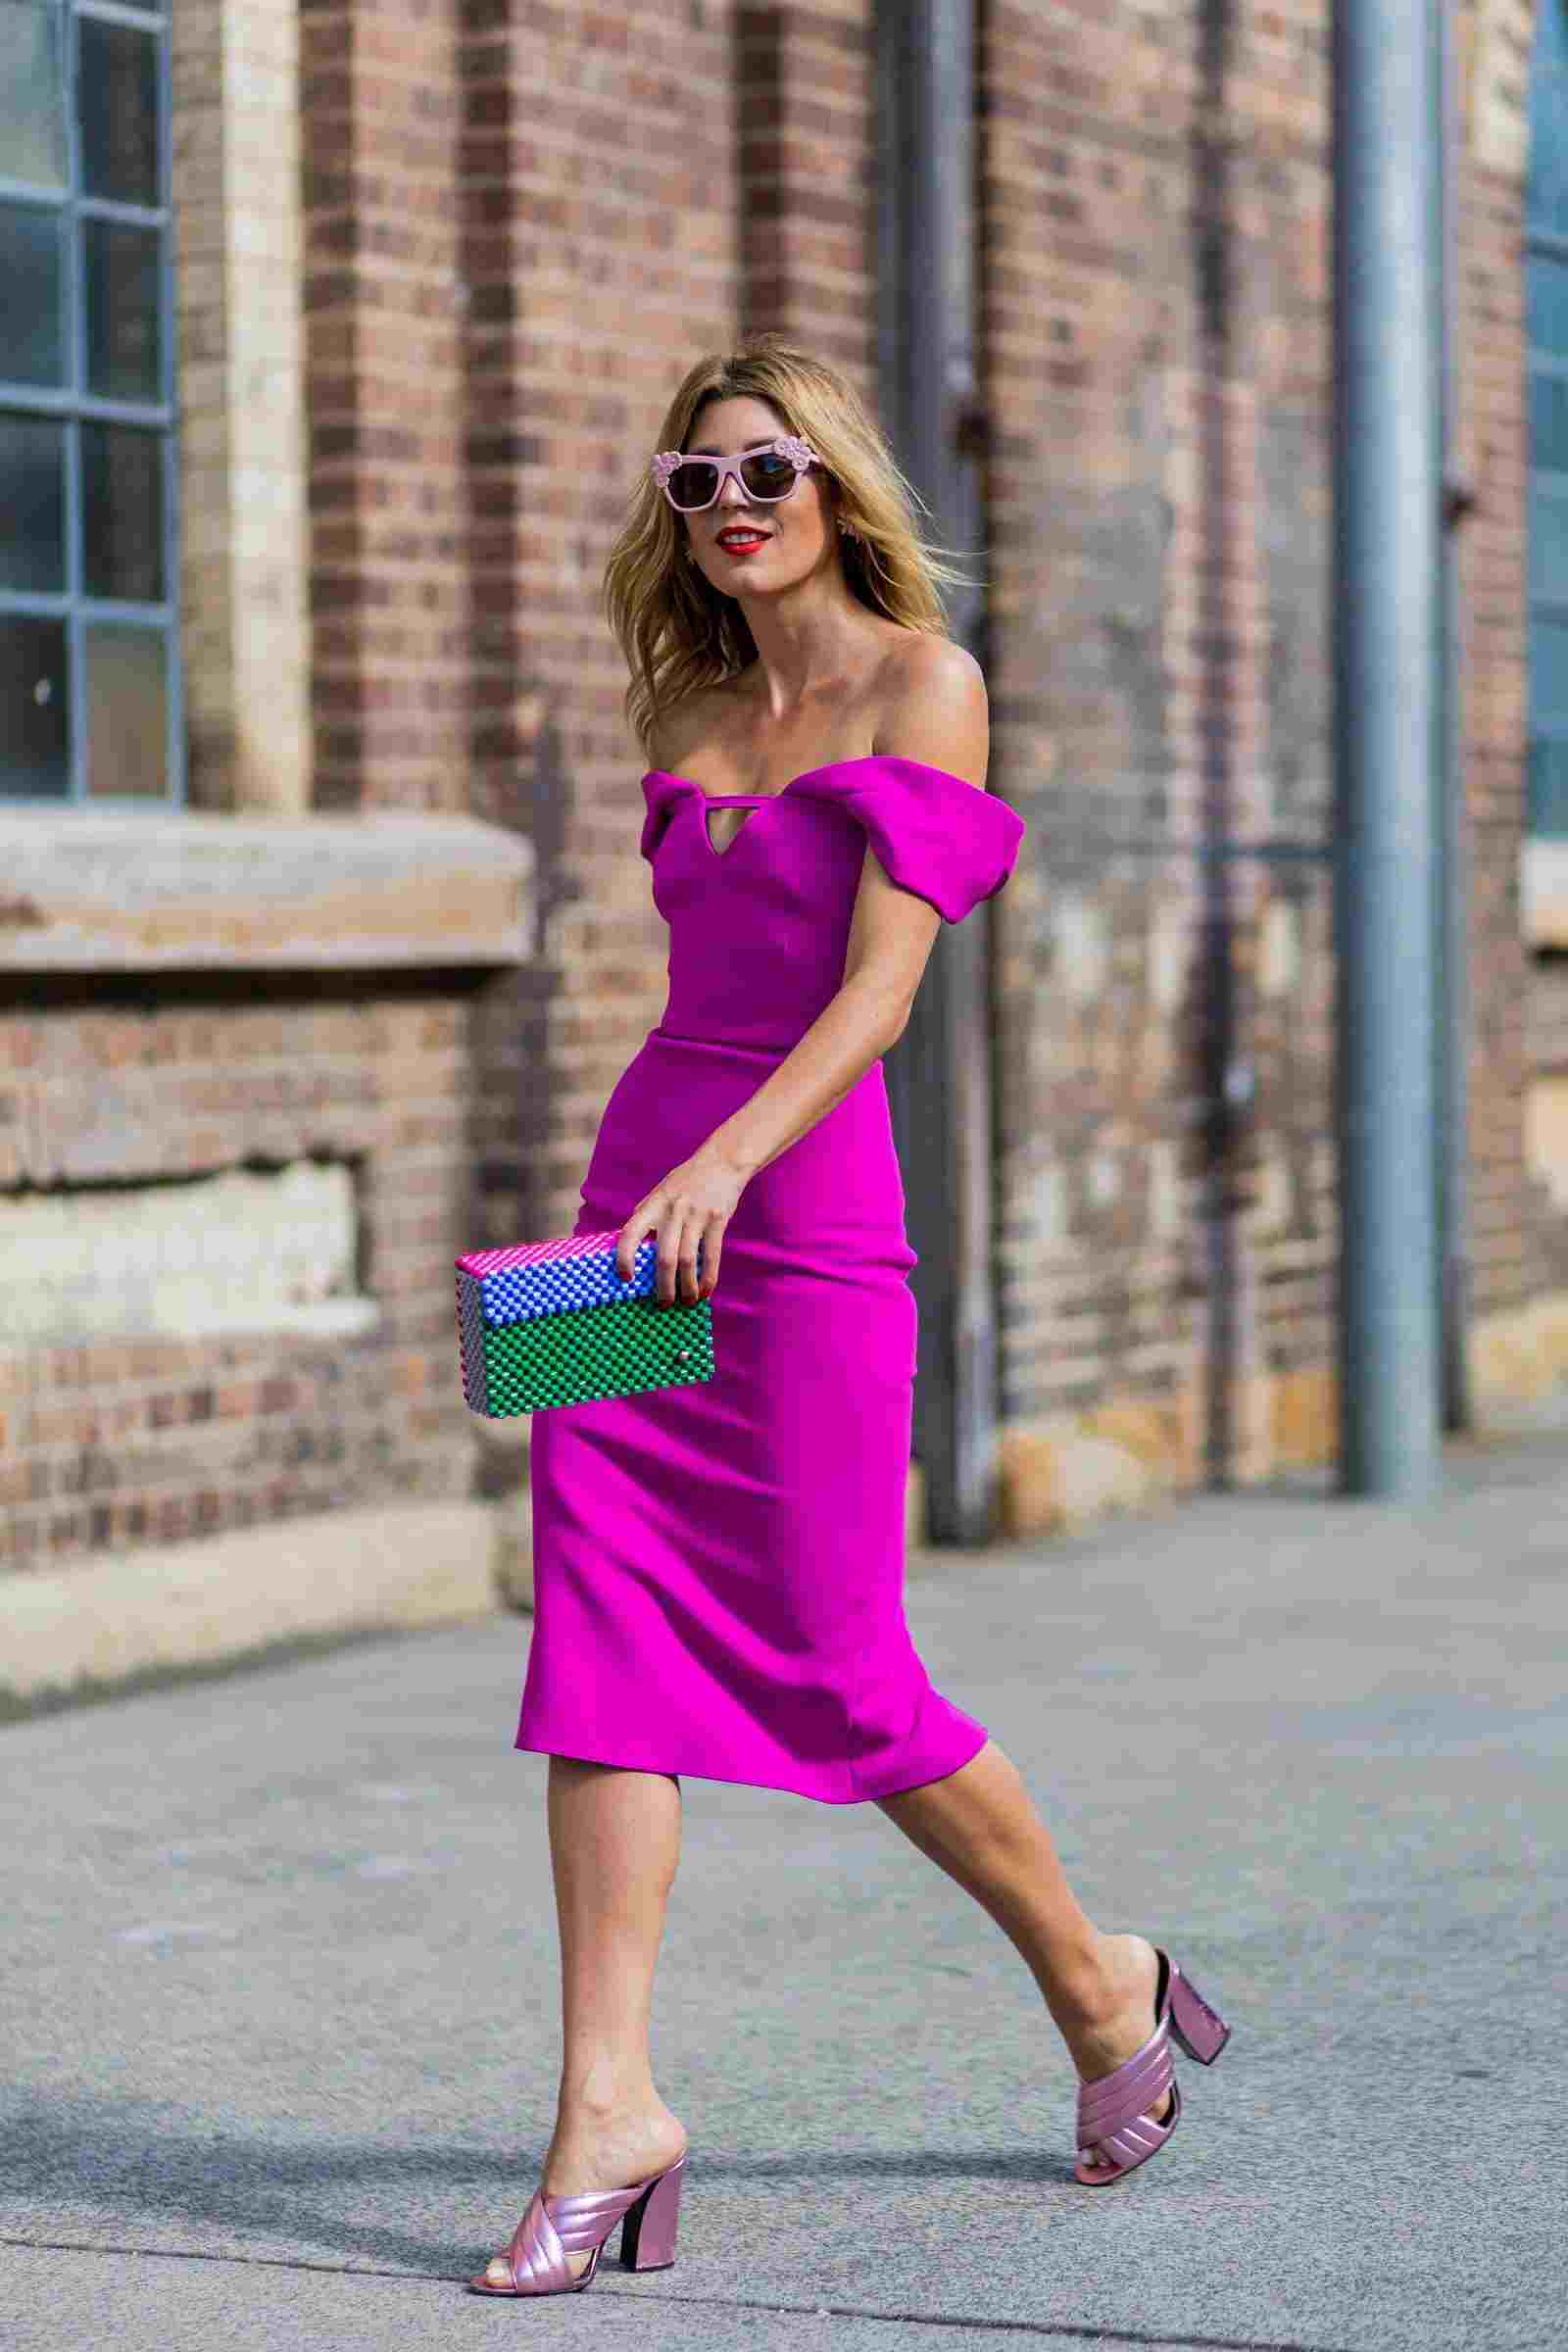 Kleid Neon Trend Farben Mules Rosa Sonnenbrille Honigblond Haarfarbe Sommer Modetrends